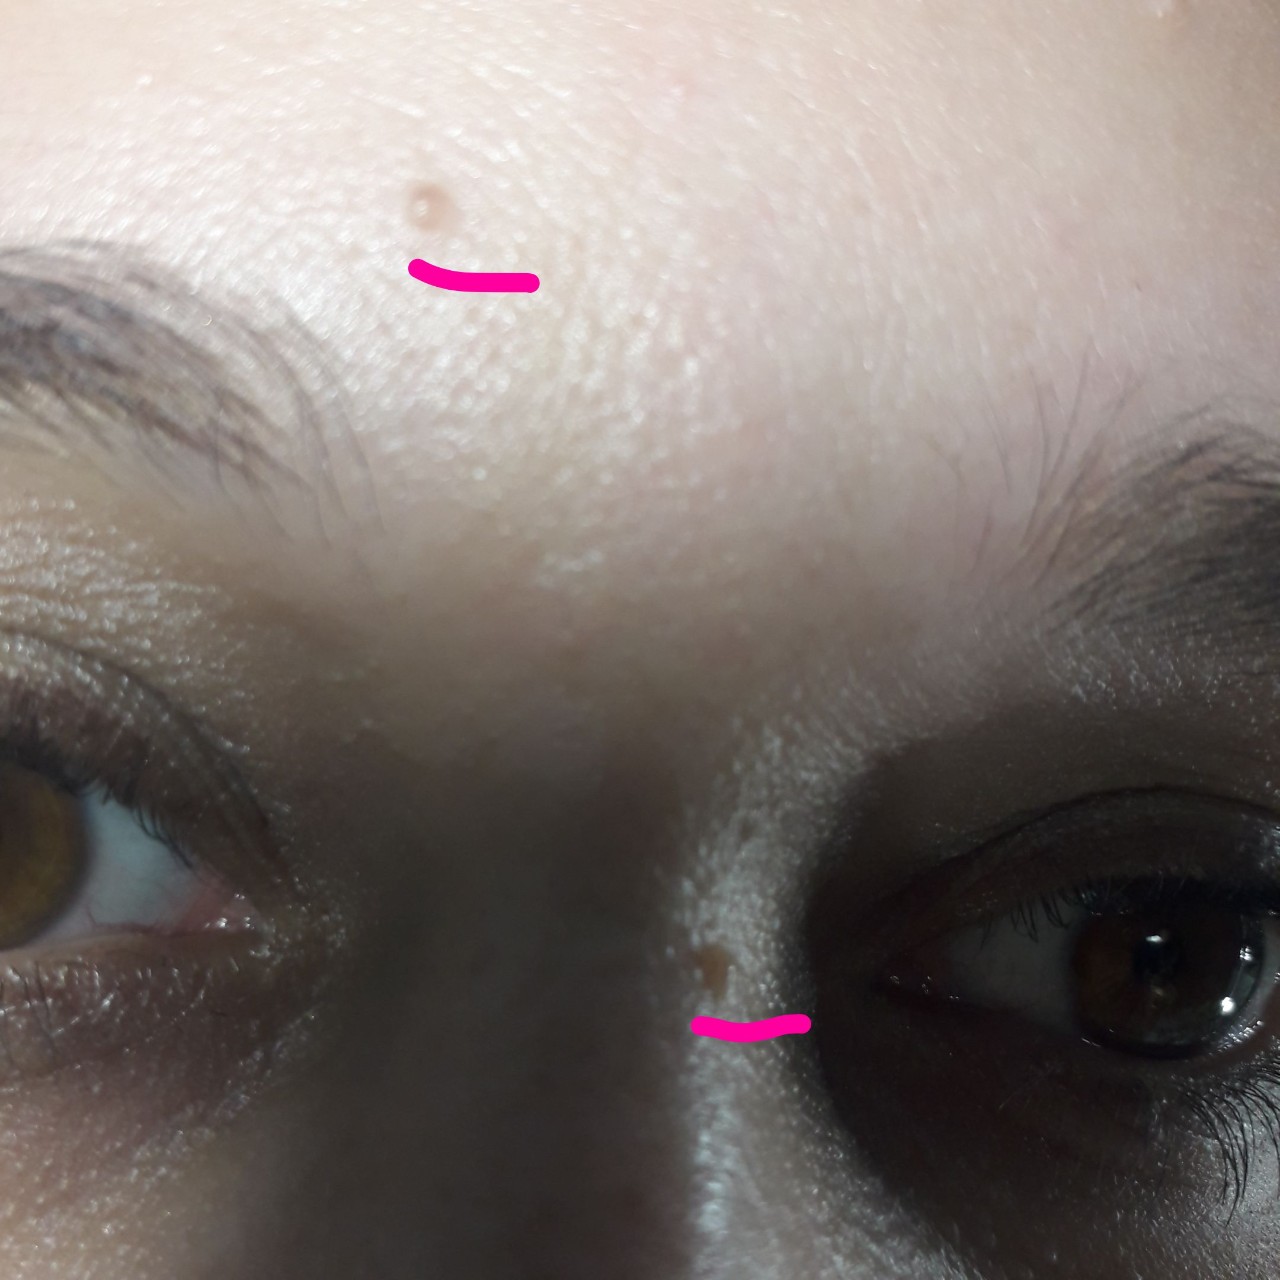 Телесного цвета образования на лице - Вопрос дерматологу - 03 Онлайн